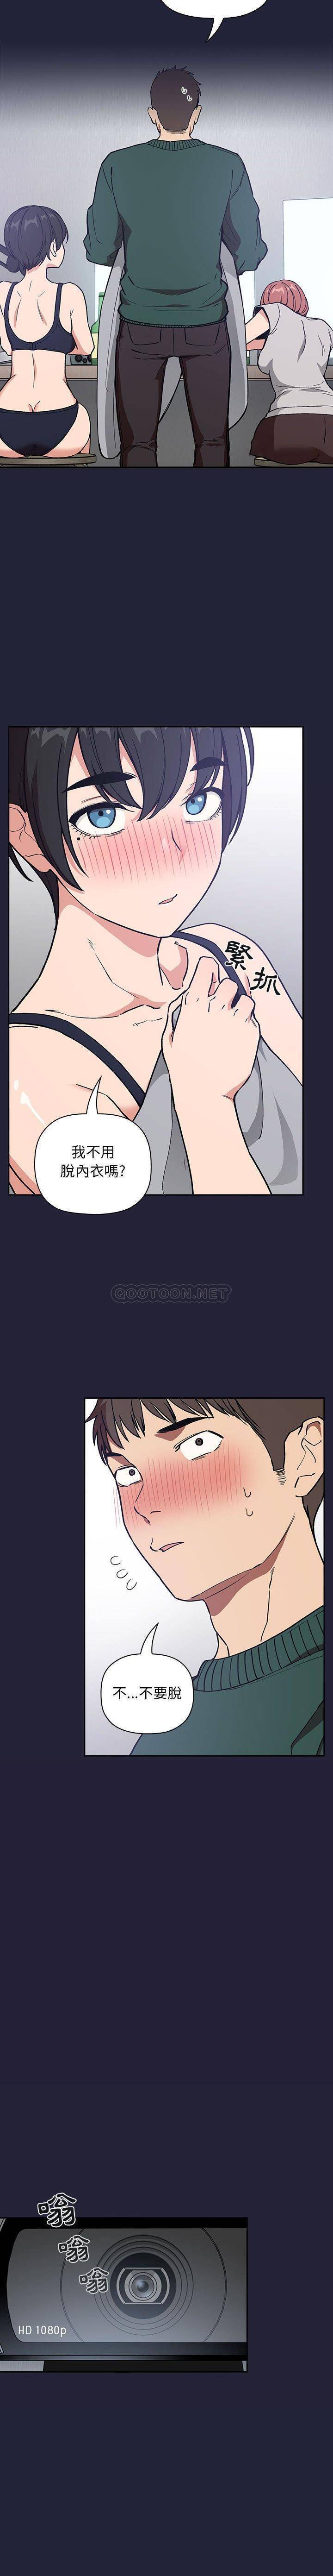 韩国污漫画 BJ的夢幻直播 第31话 18